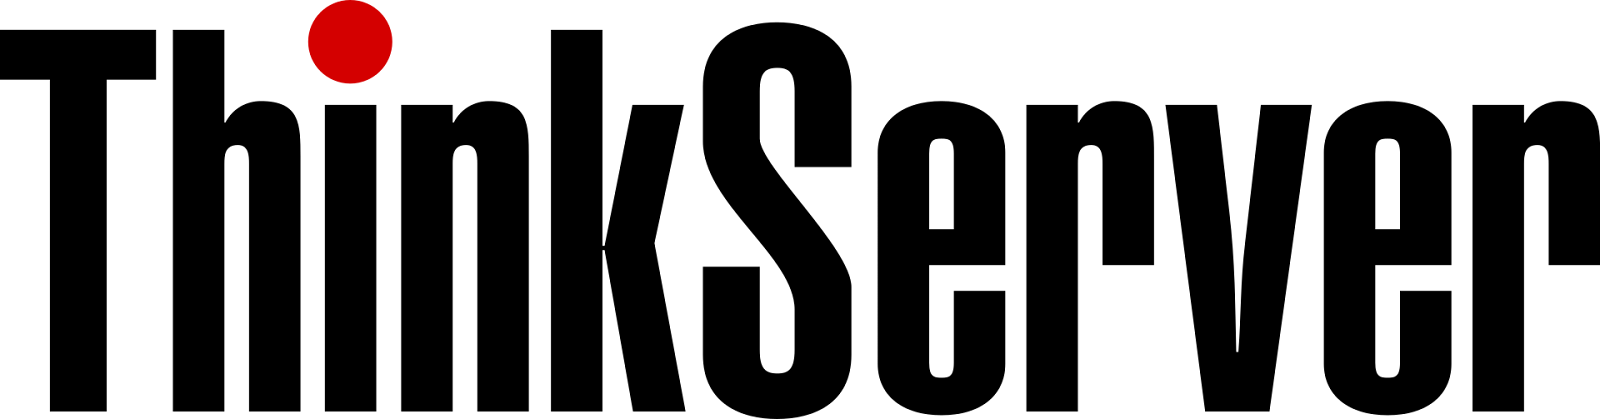 lenovo thinkstation logo